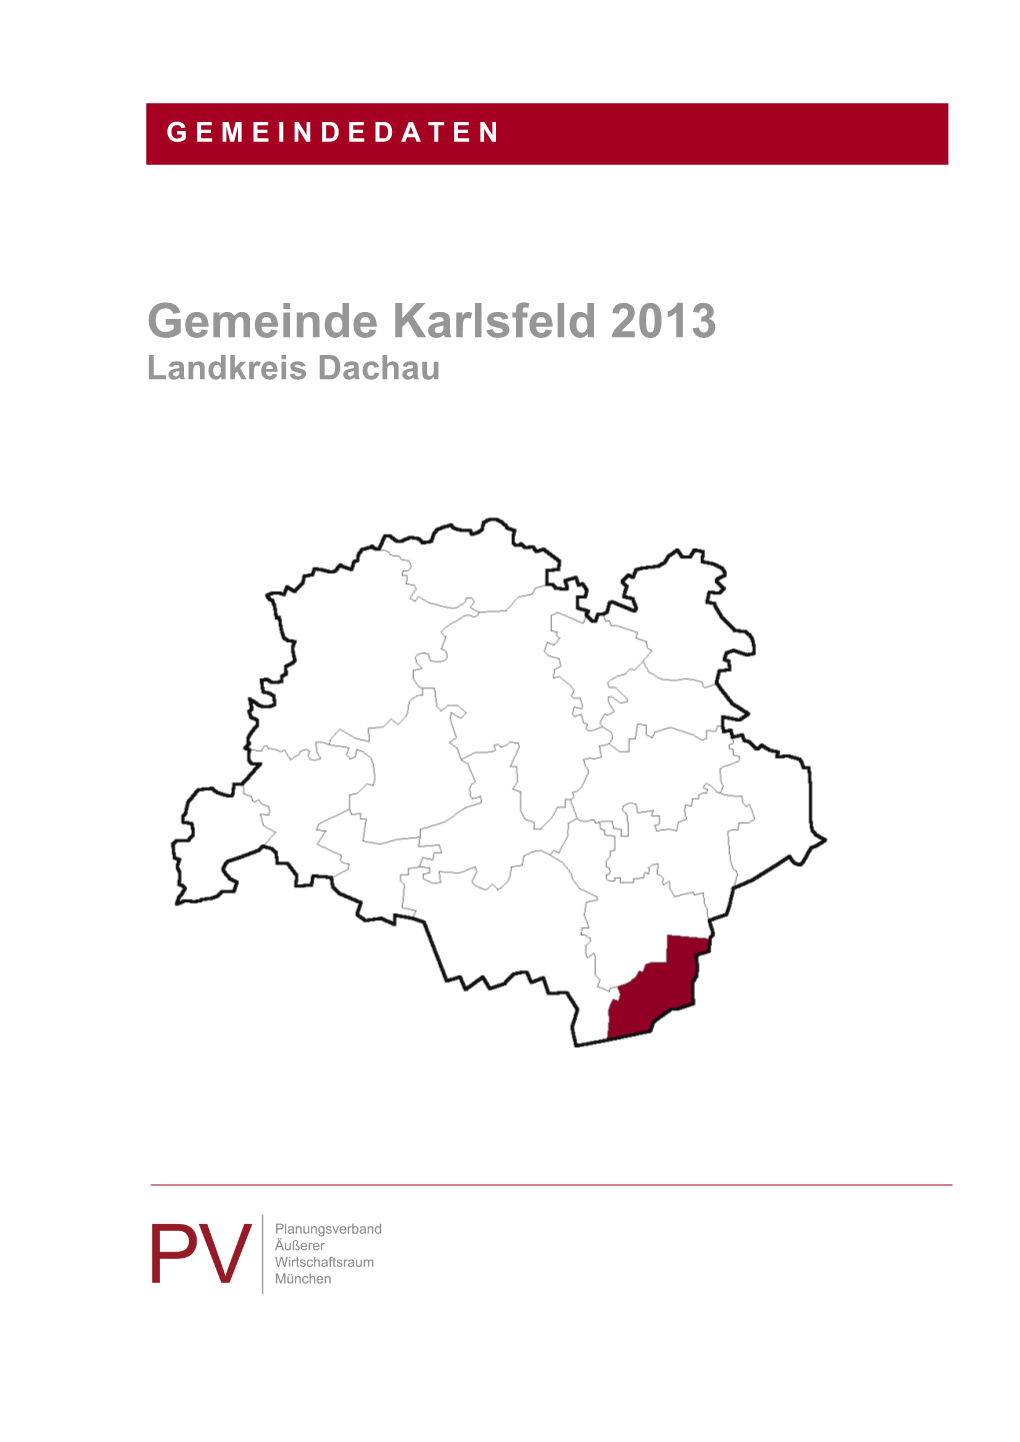 Gemeindedaten 2013